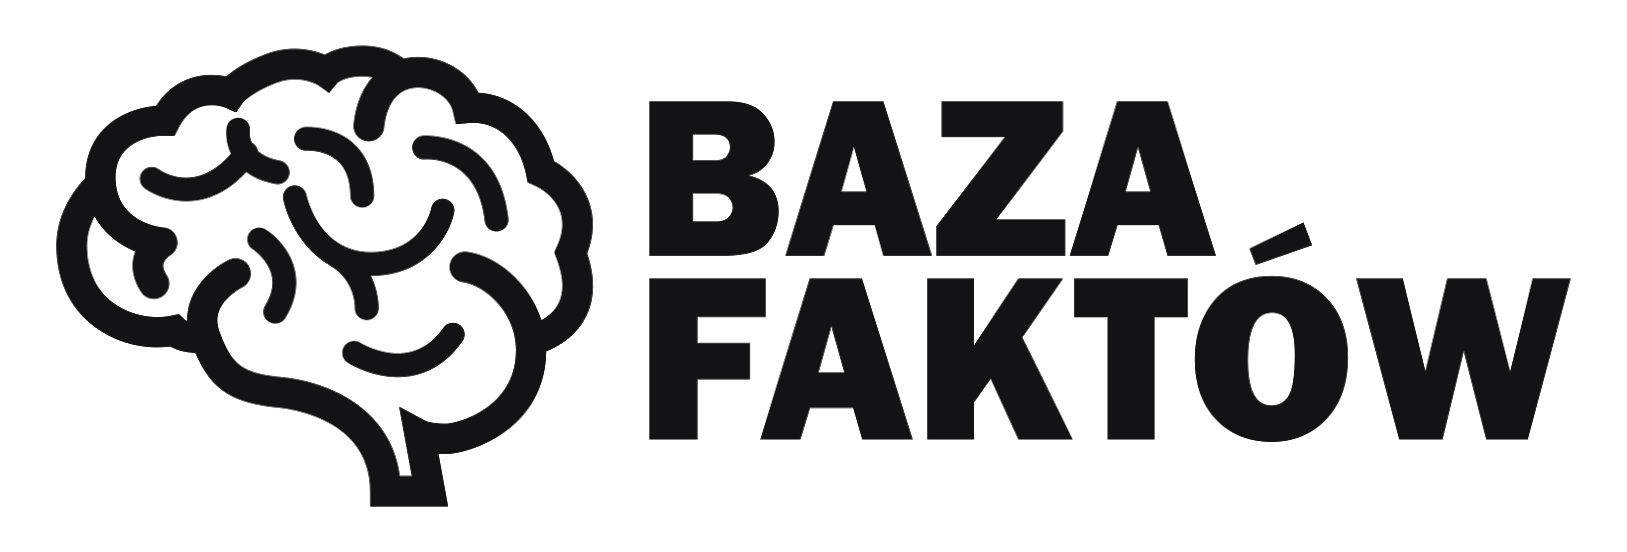 Bazafaktow.pl - Najciekawsze posty każdego dnia!